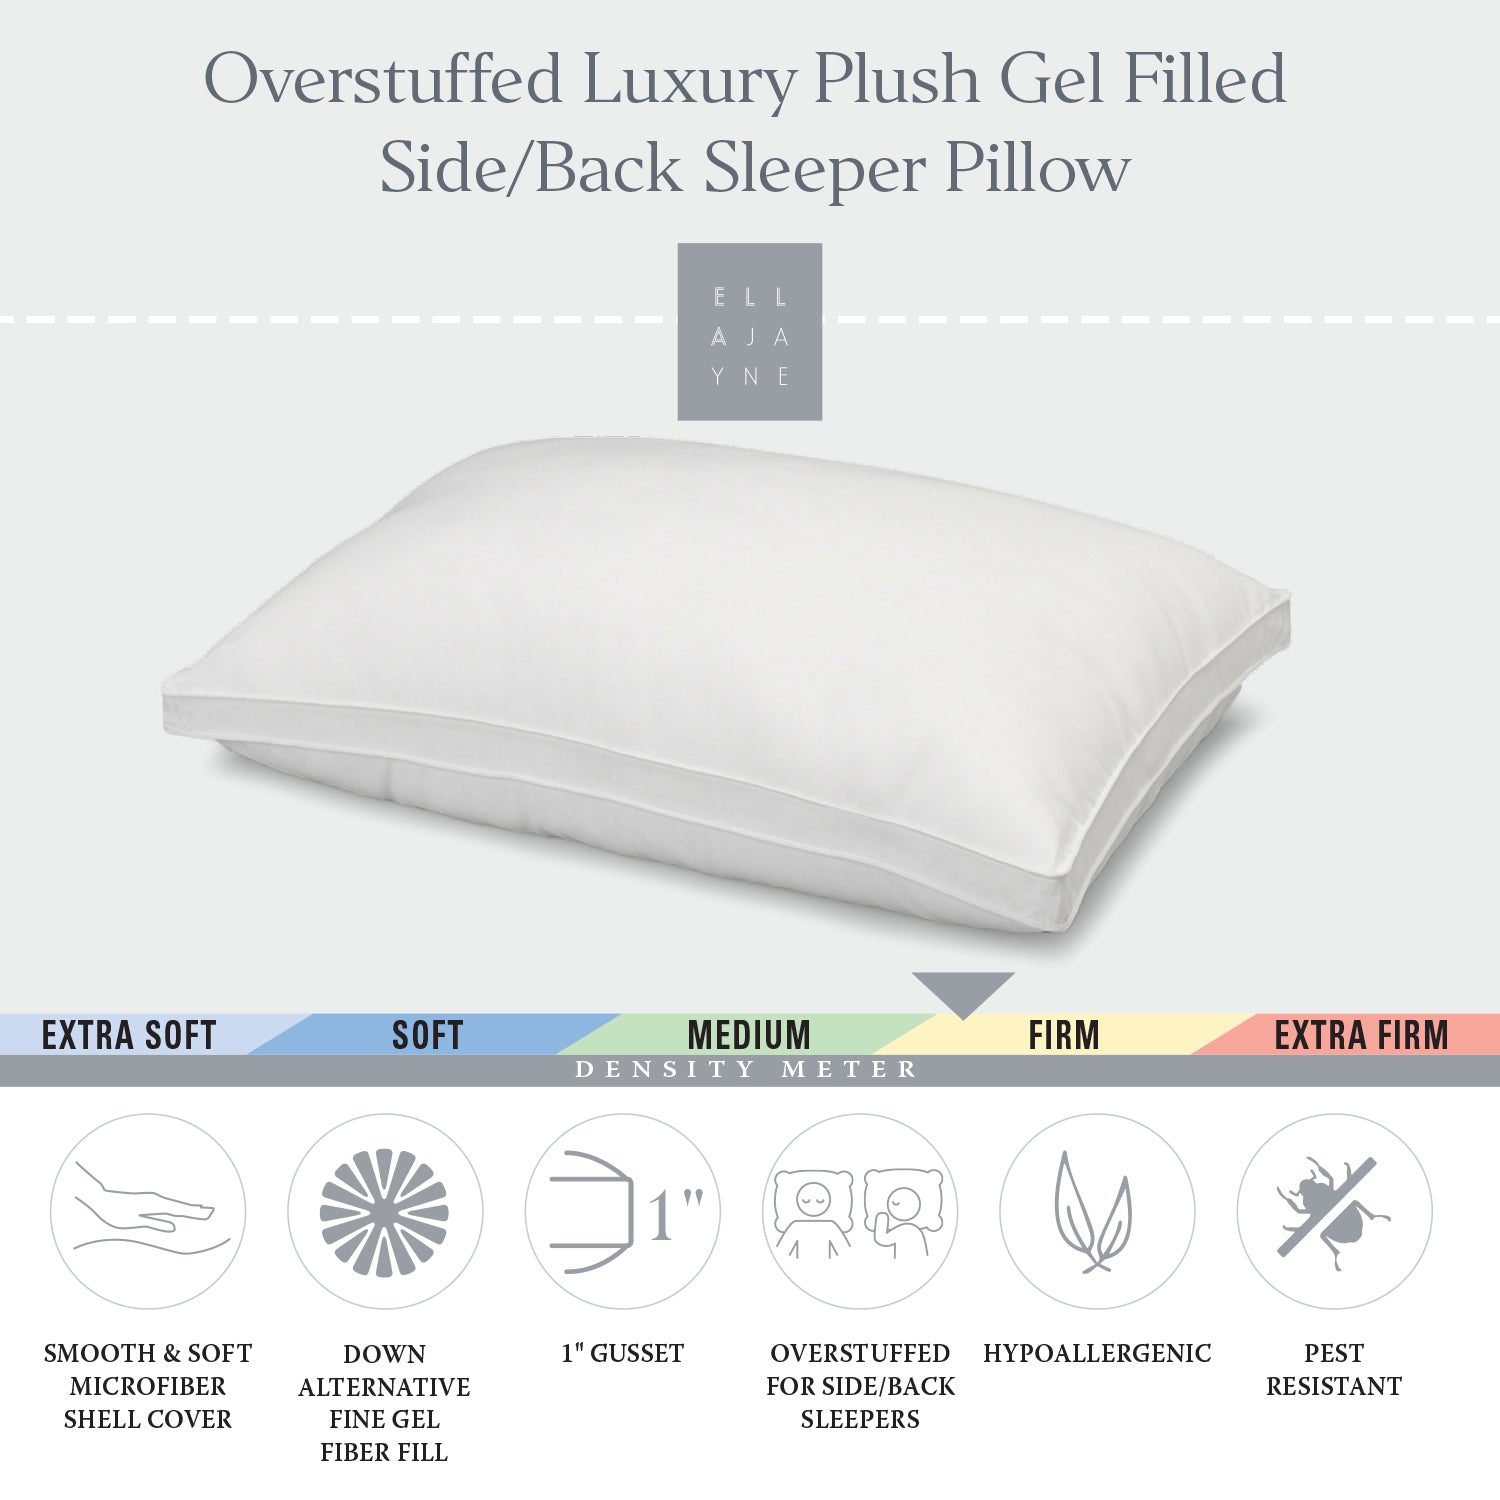 Overstuffed Luxury Plush Med/Firm Gel Filled Side/Back Sleeper